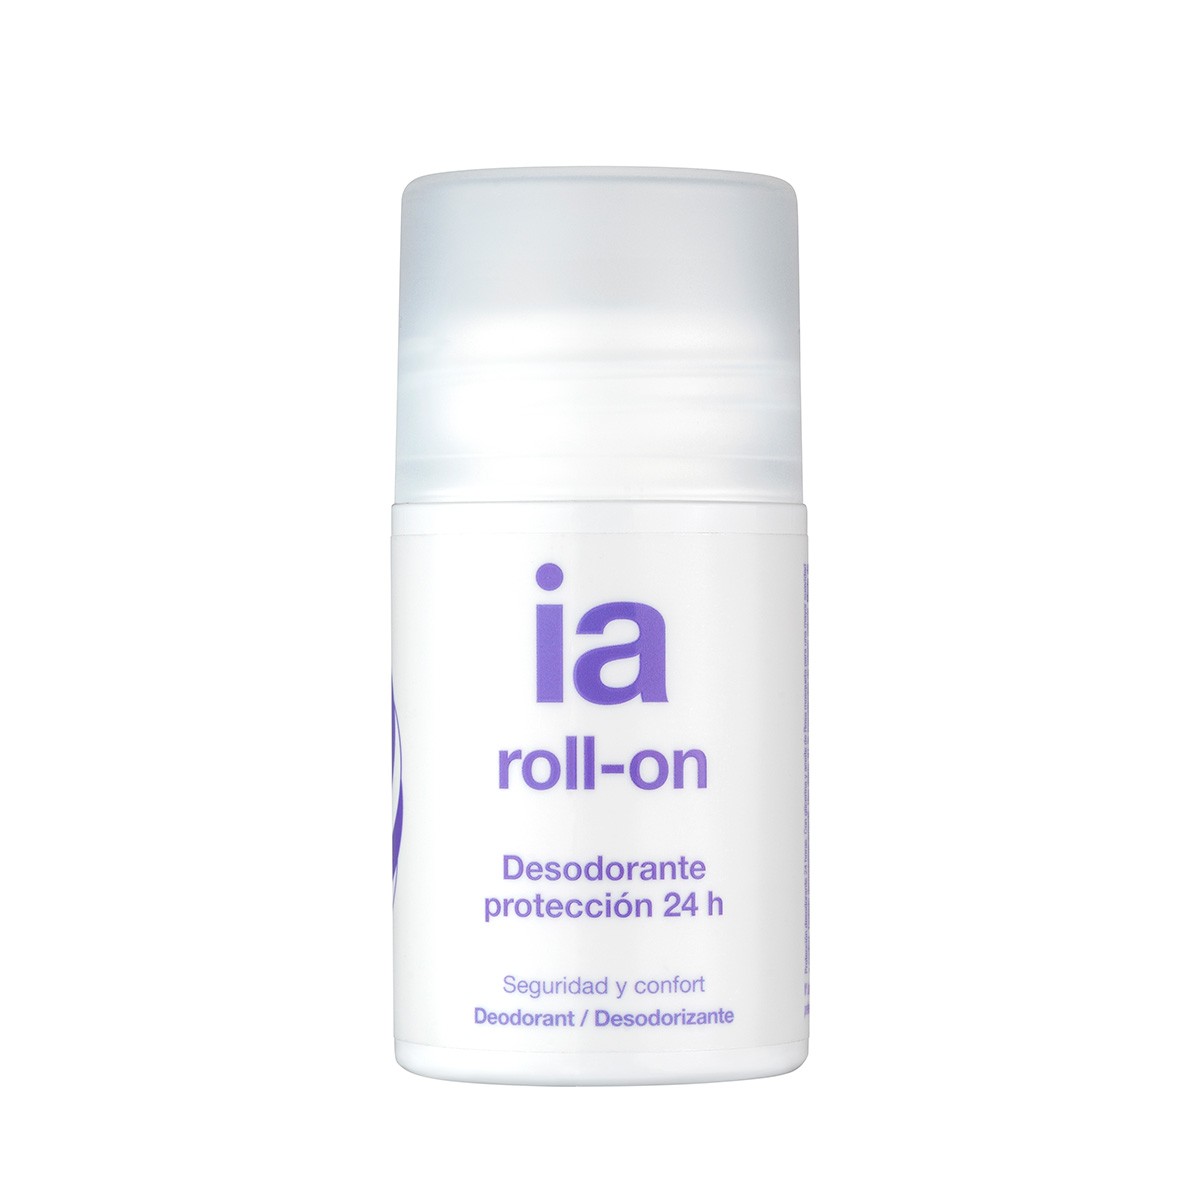 Interapothek desodorante roll-on protección 24 horas 75ml